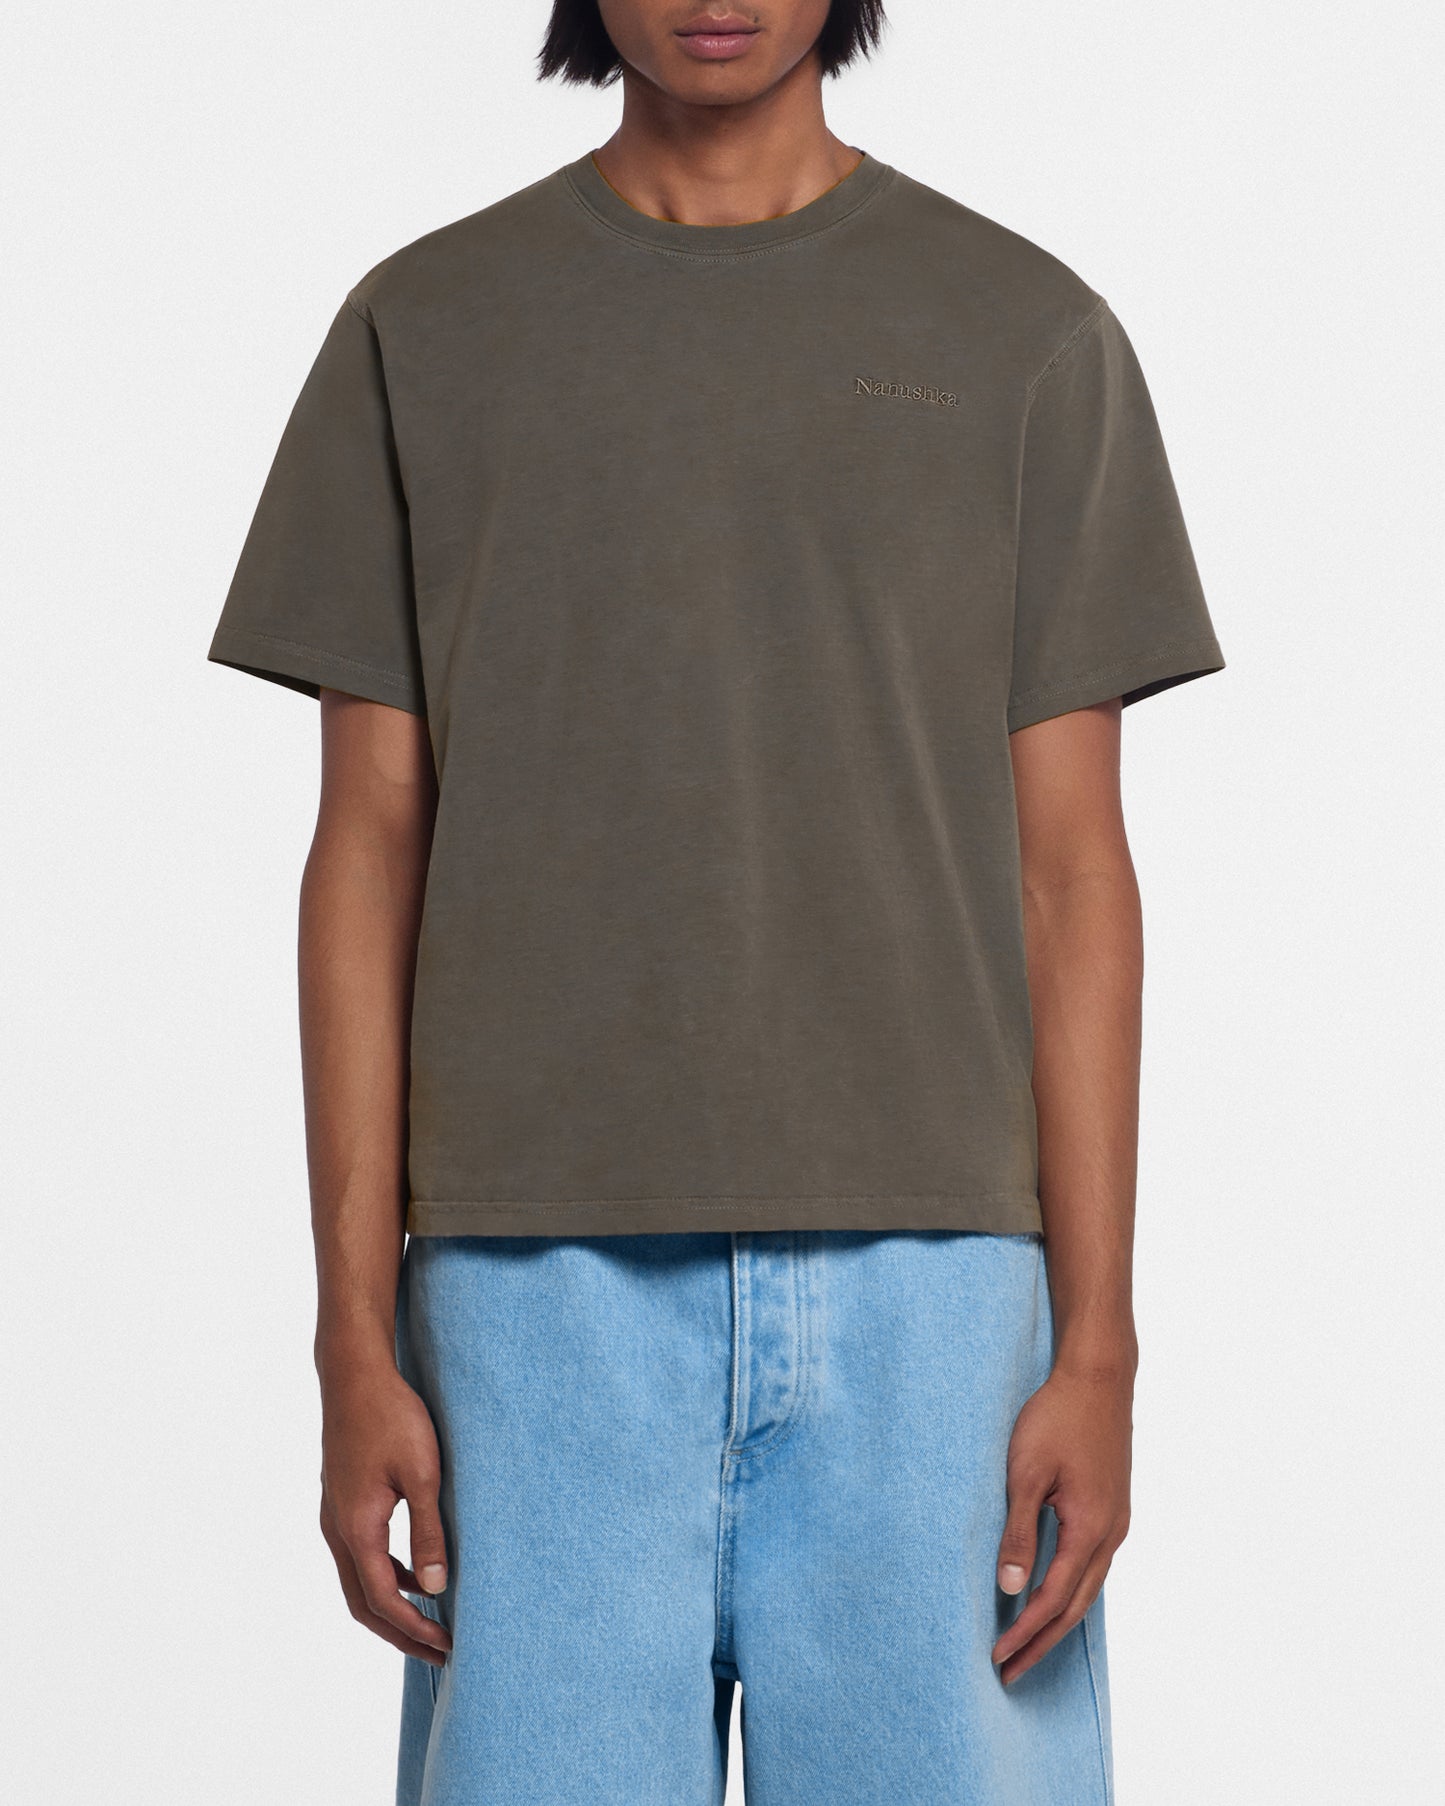 Reece - Organically Grown Cotton T-Shirt - Asphalt